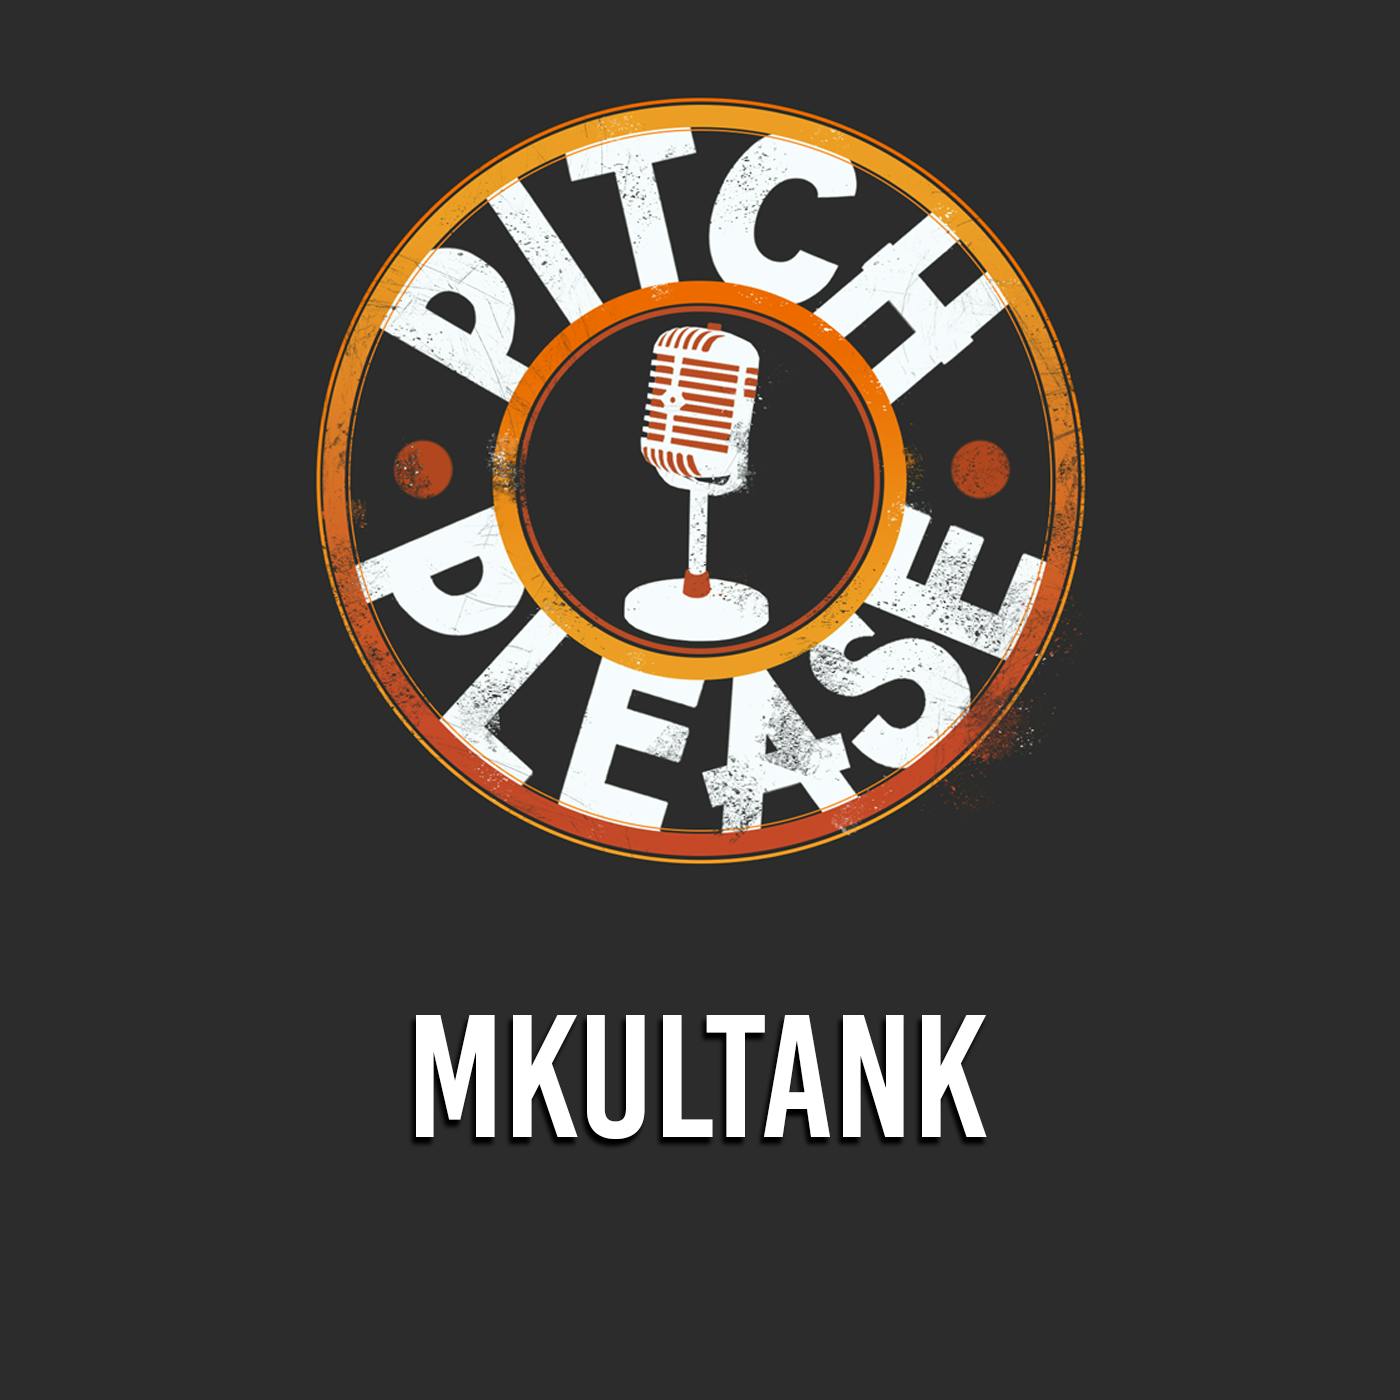 Pitch, Please - MKULTANK